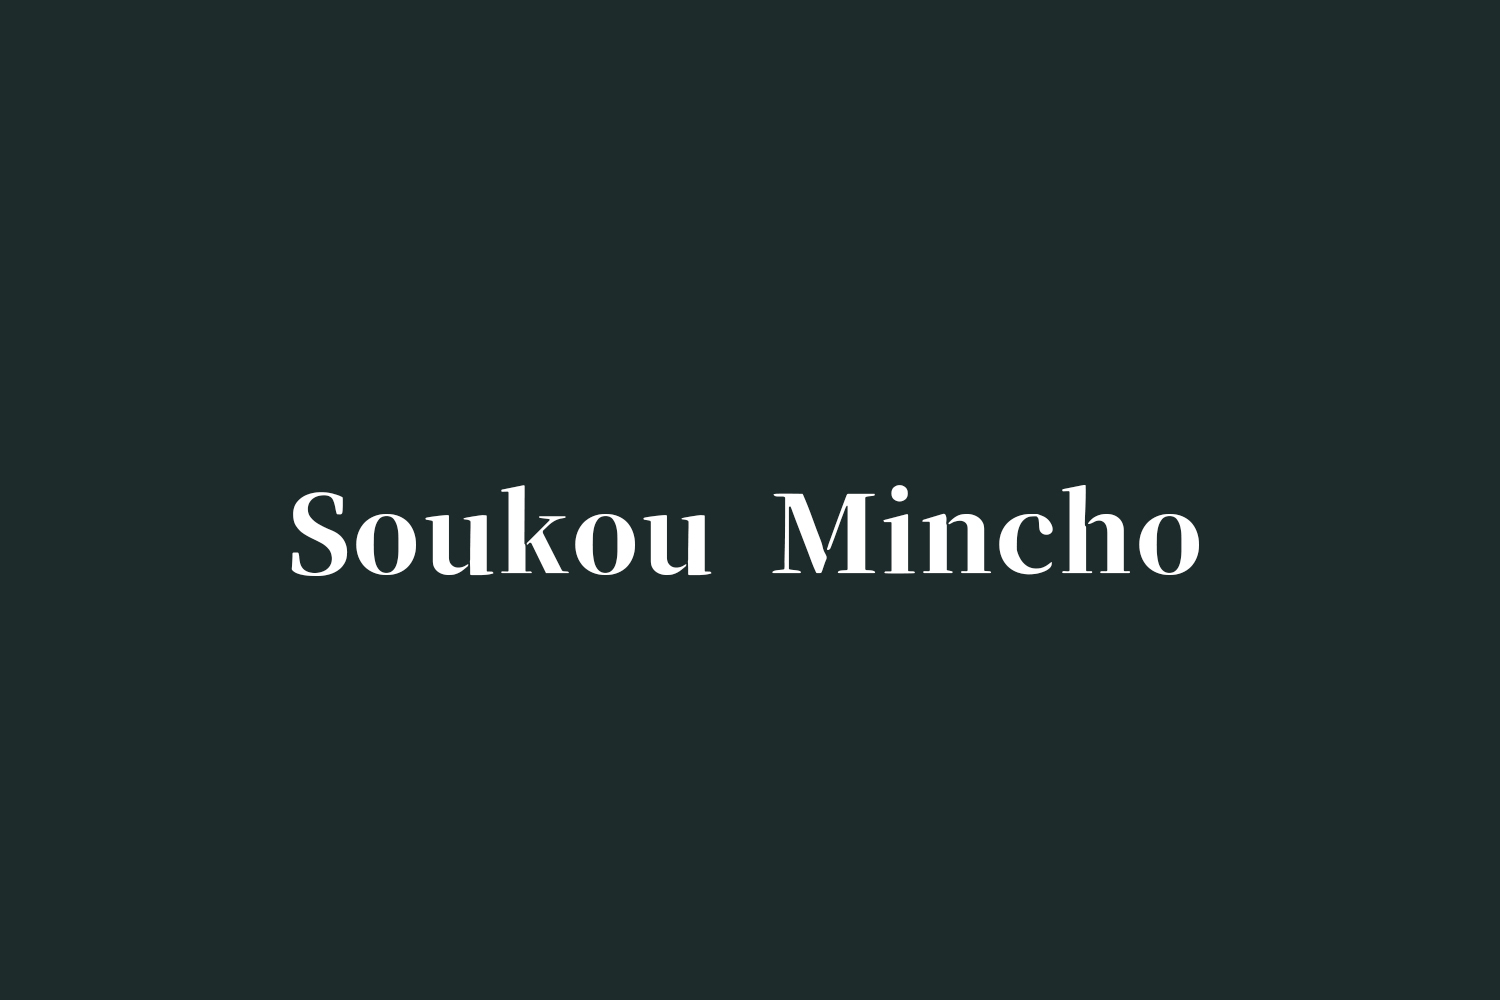 Soukou Mincho